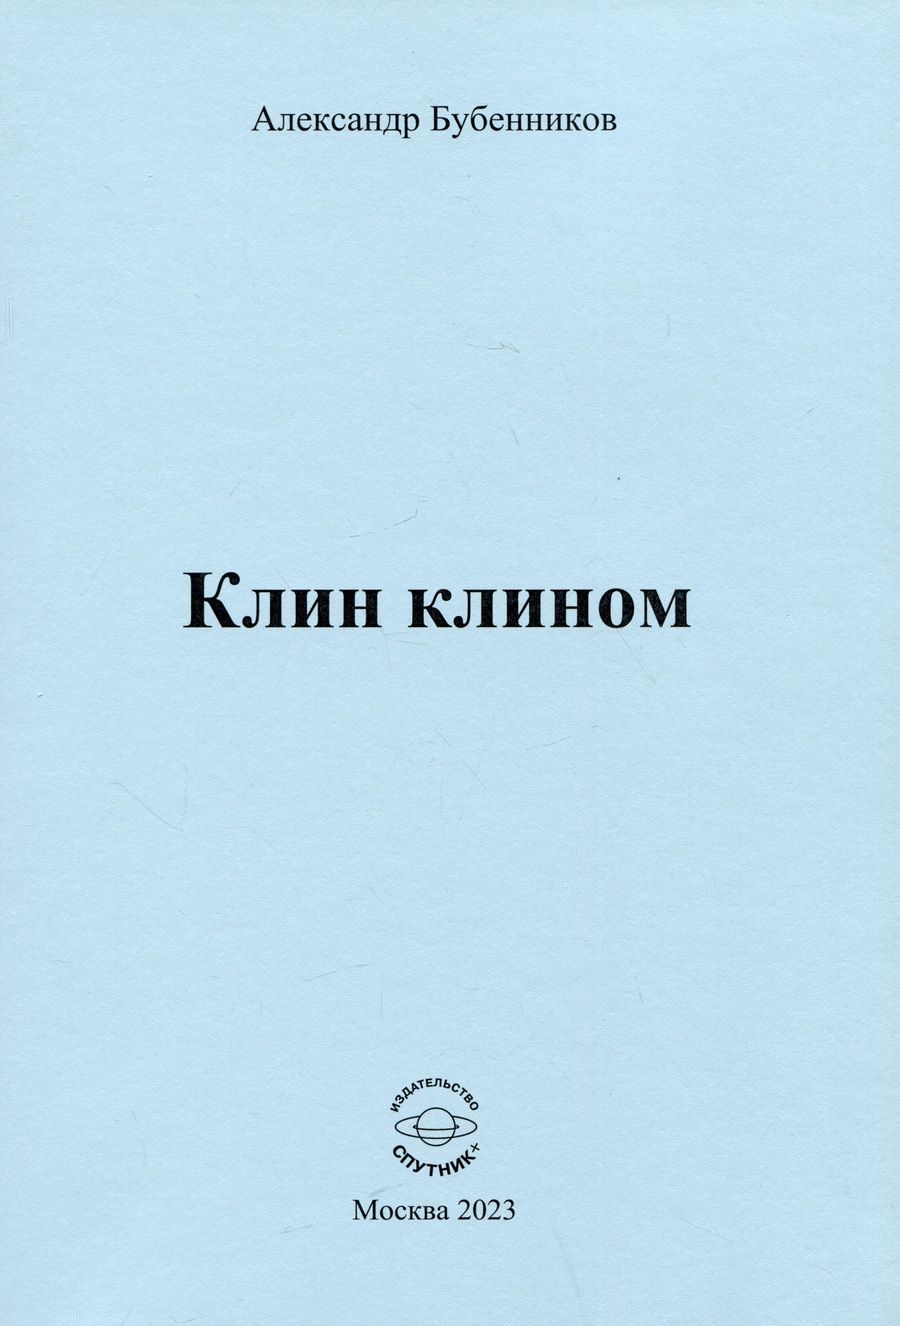 Обложка книги "Бубенников: Клин клином"